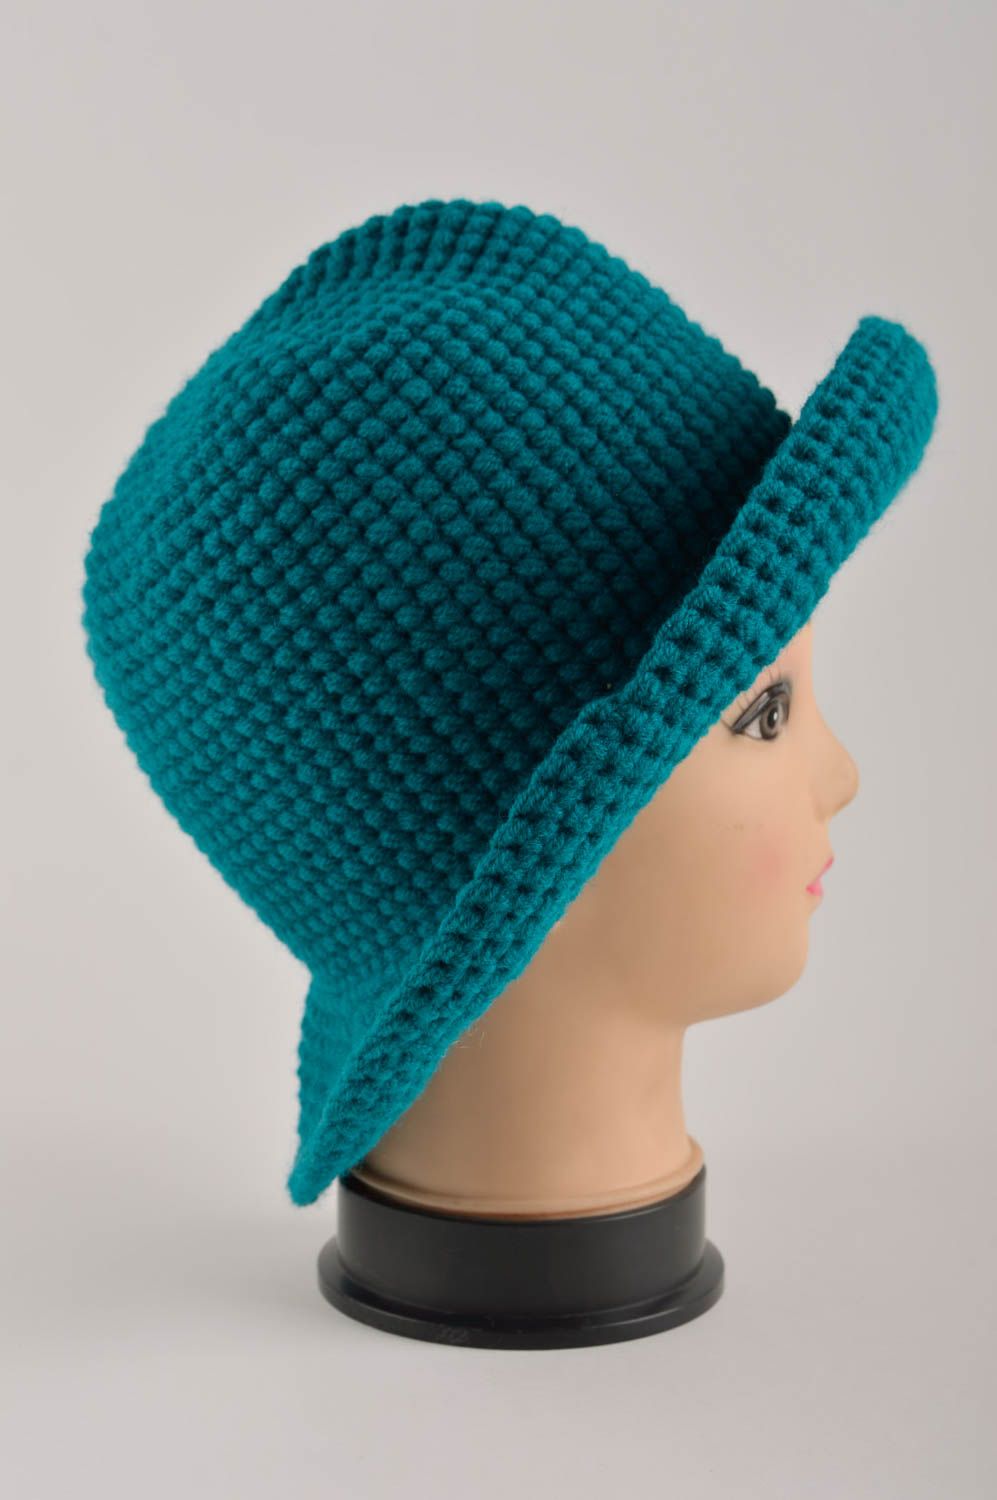 Sombrero para mujeres hecho a mano regalo original gorro tejido color turquesa foto 4